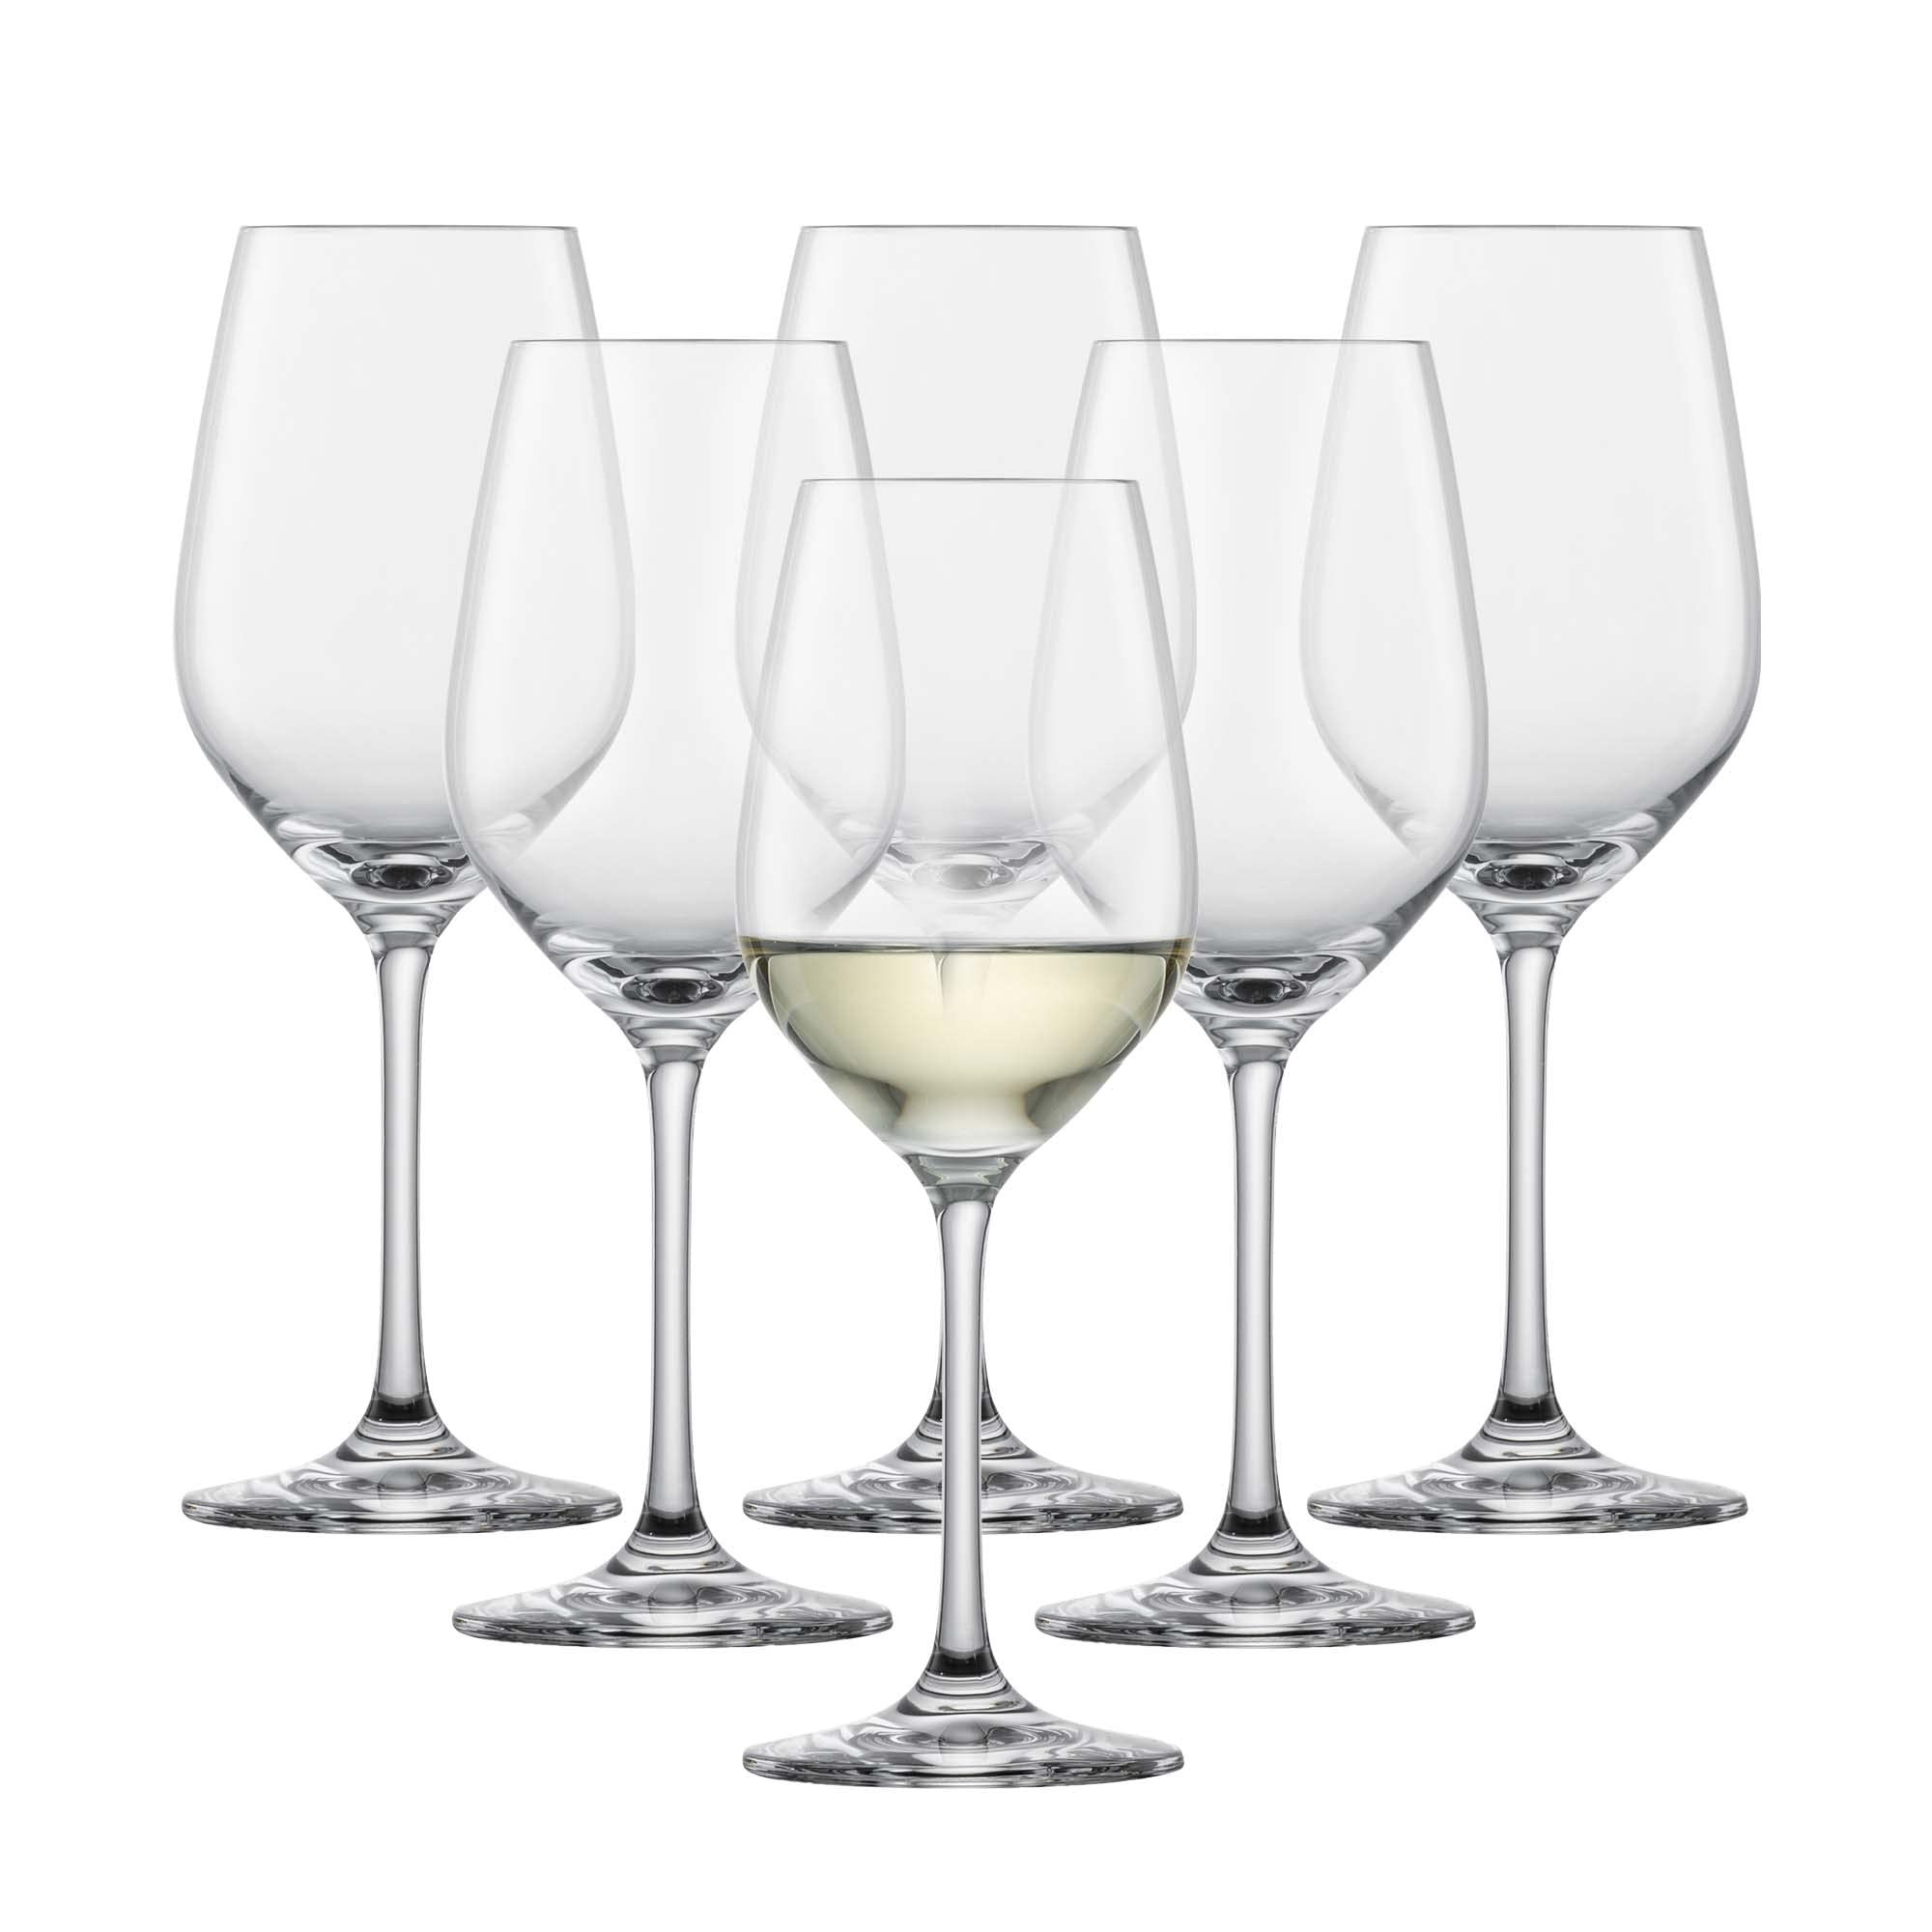 SCHOTT ZWIESEL Weißweinglas Viña (6er-Set), zeitlose Weingläser für Weißwein, spülmaschinenfeste Tritan-Kristallgläser, Made in Germany (Art.-Nr. 110485)